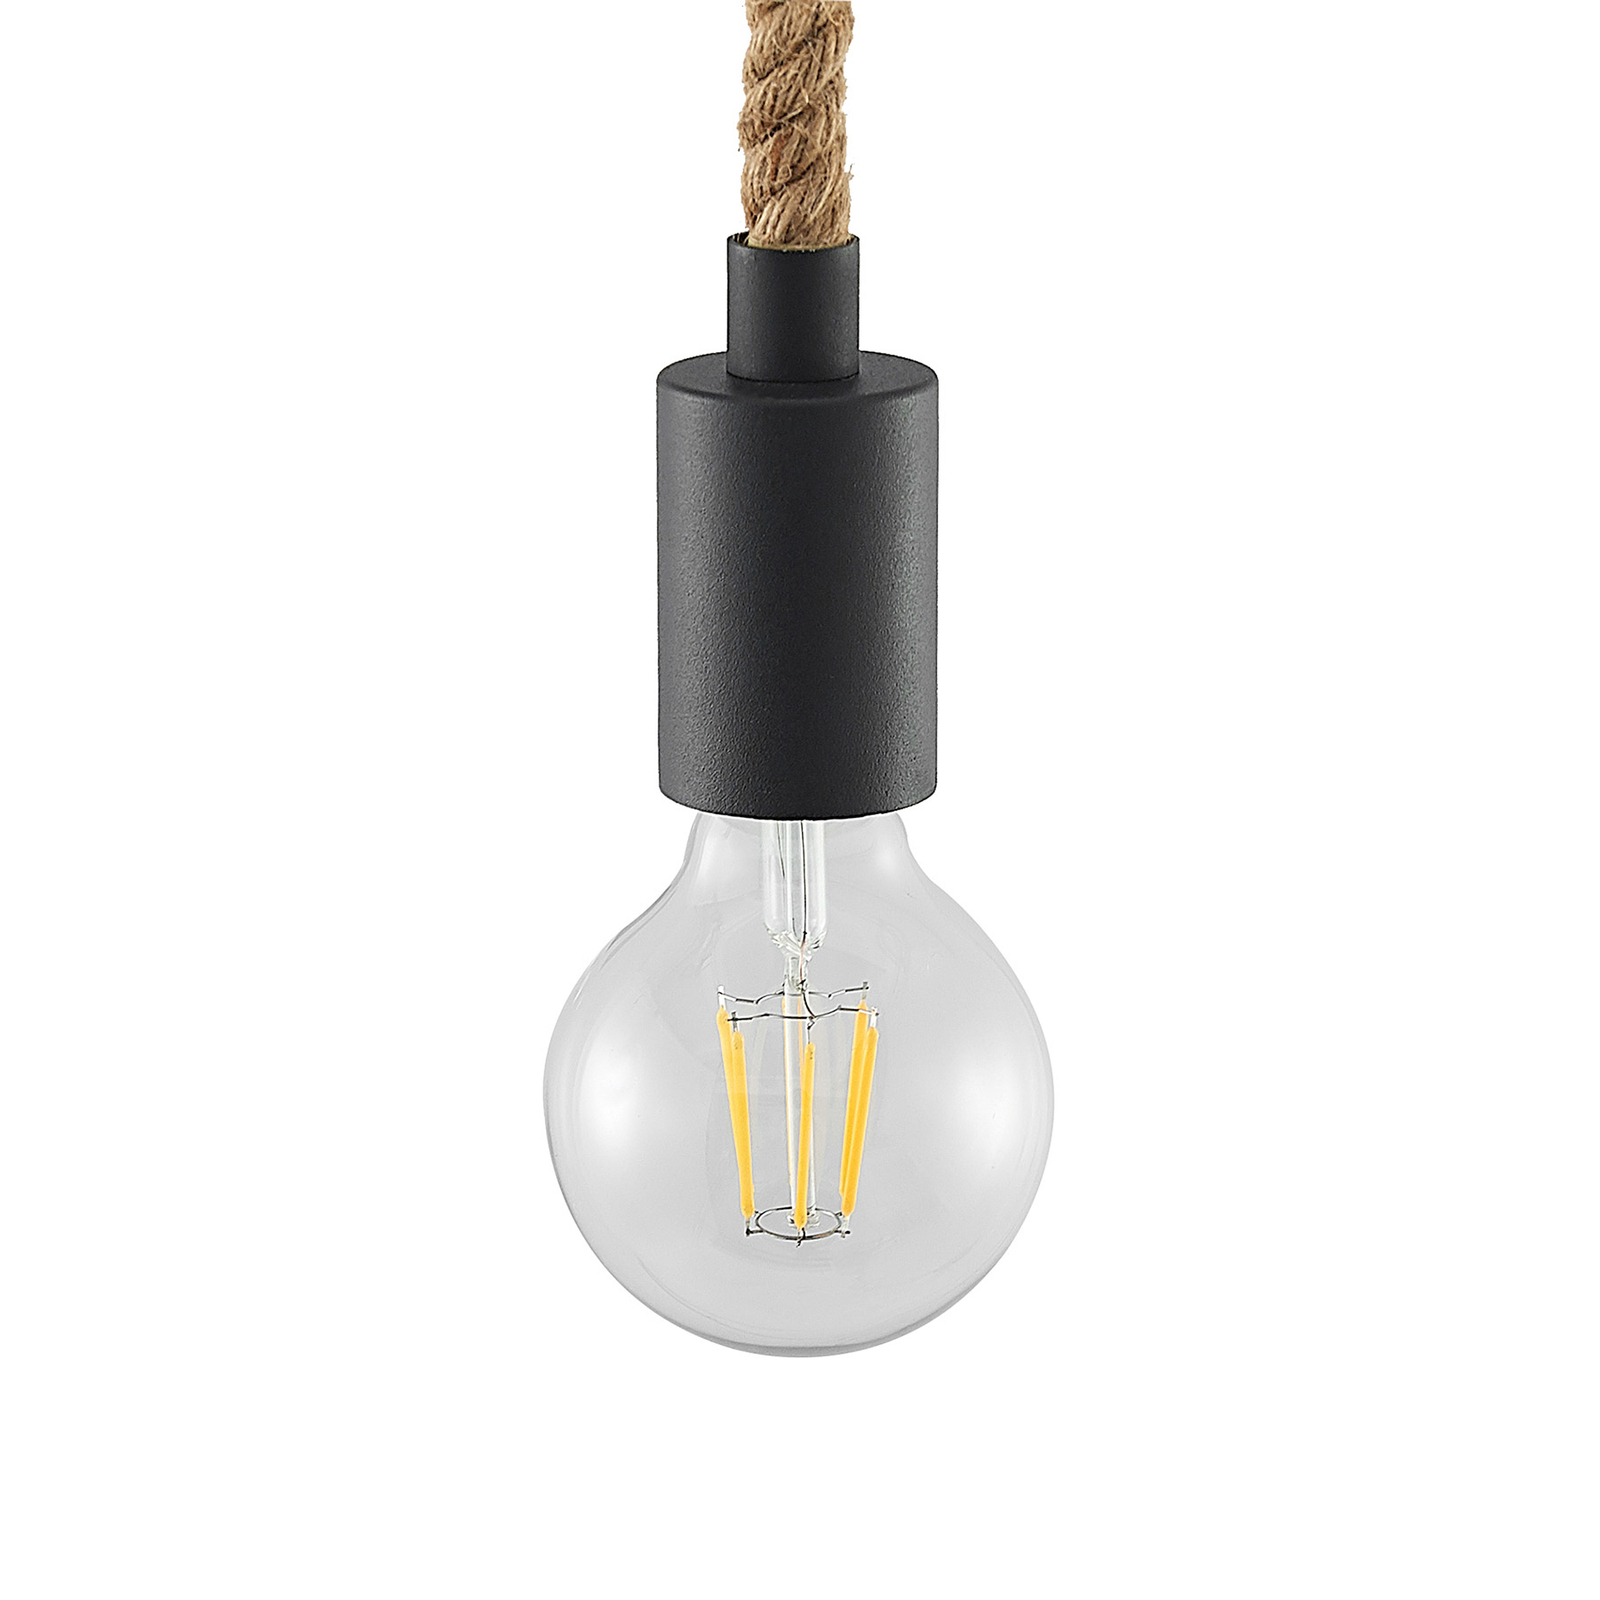 Lucande Ropina plafondlamp, 3-lamps